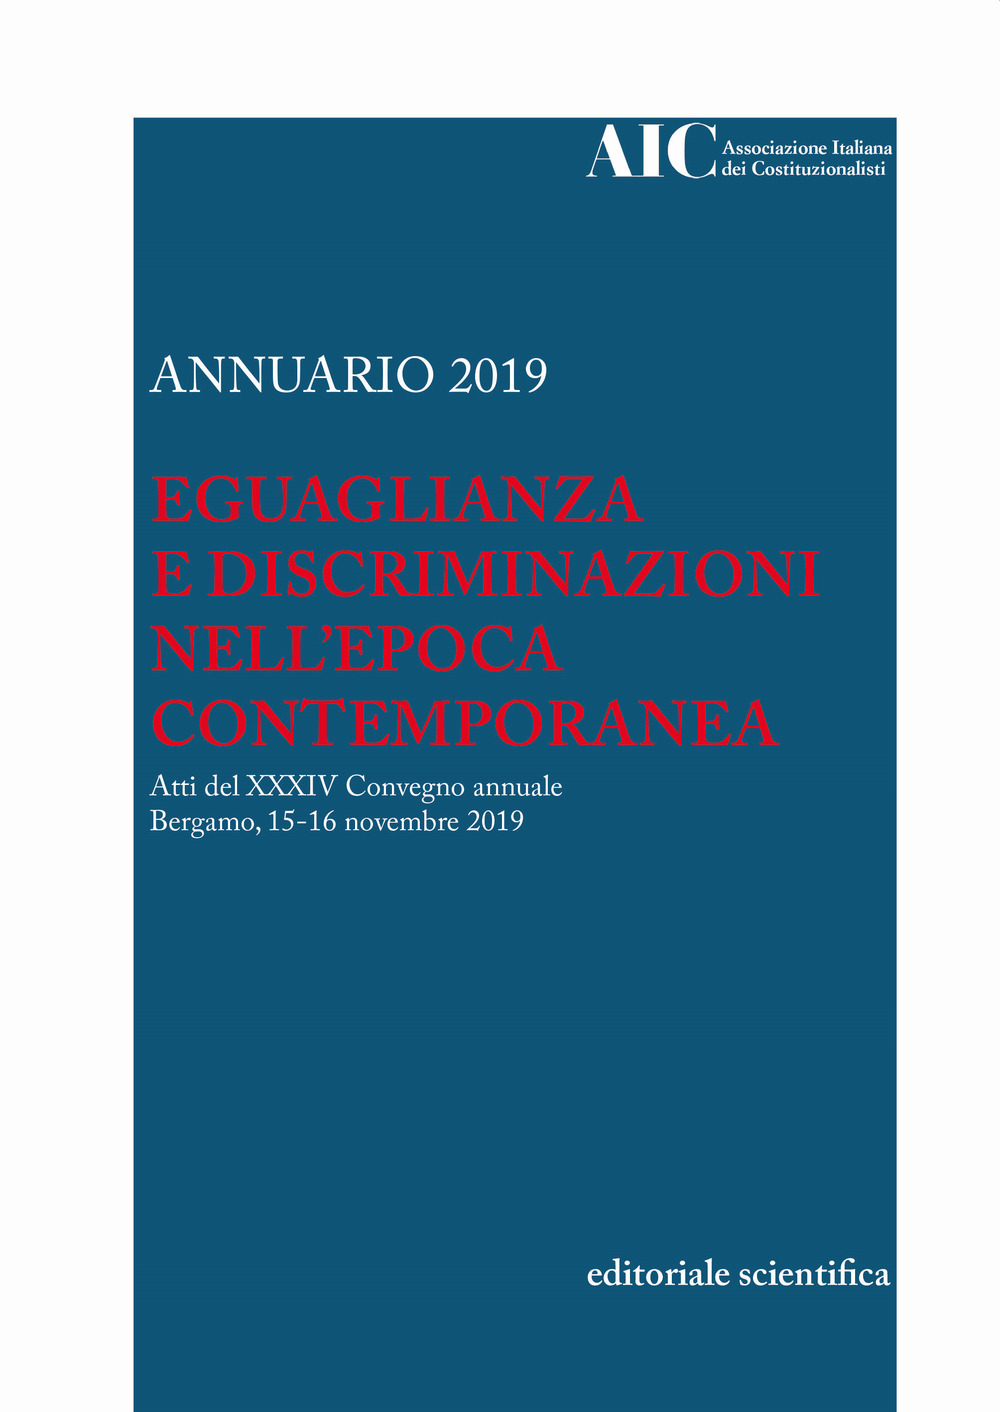 Annuario AIC 2019. Eguaglianza e discriminazioni nell'epoca contemporanea. Atti del XXXIV Convegno annuale (Bergamo, 15-16 novembre 2019)